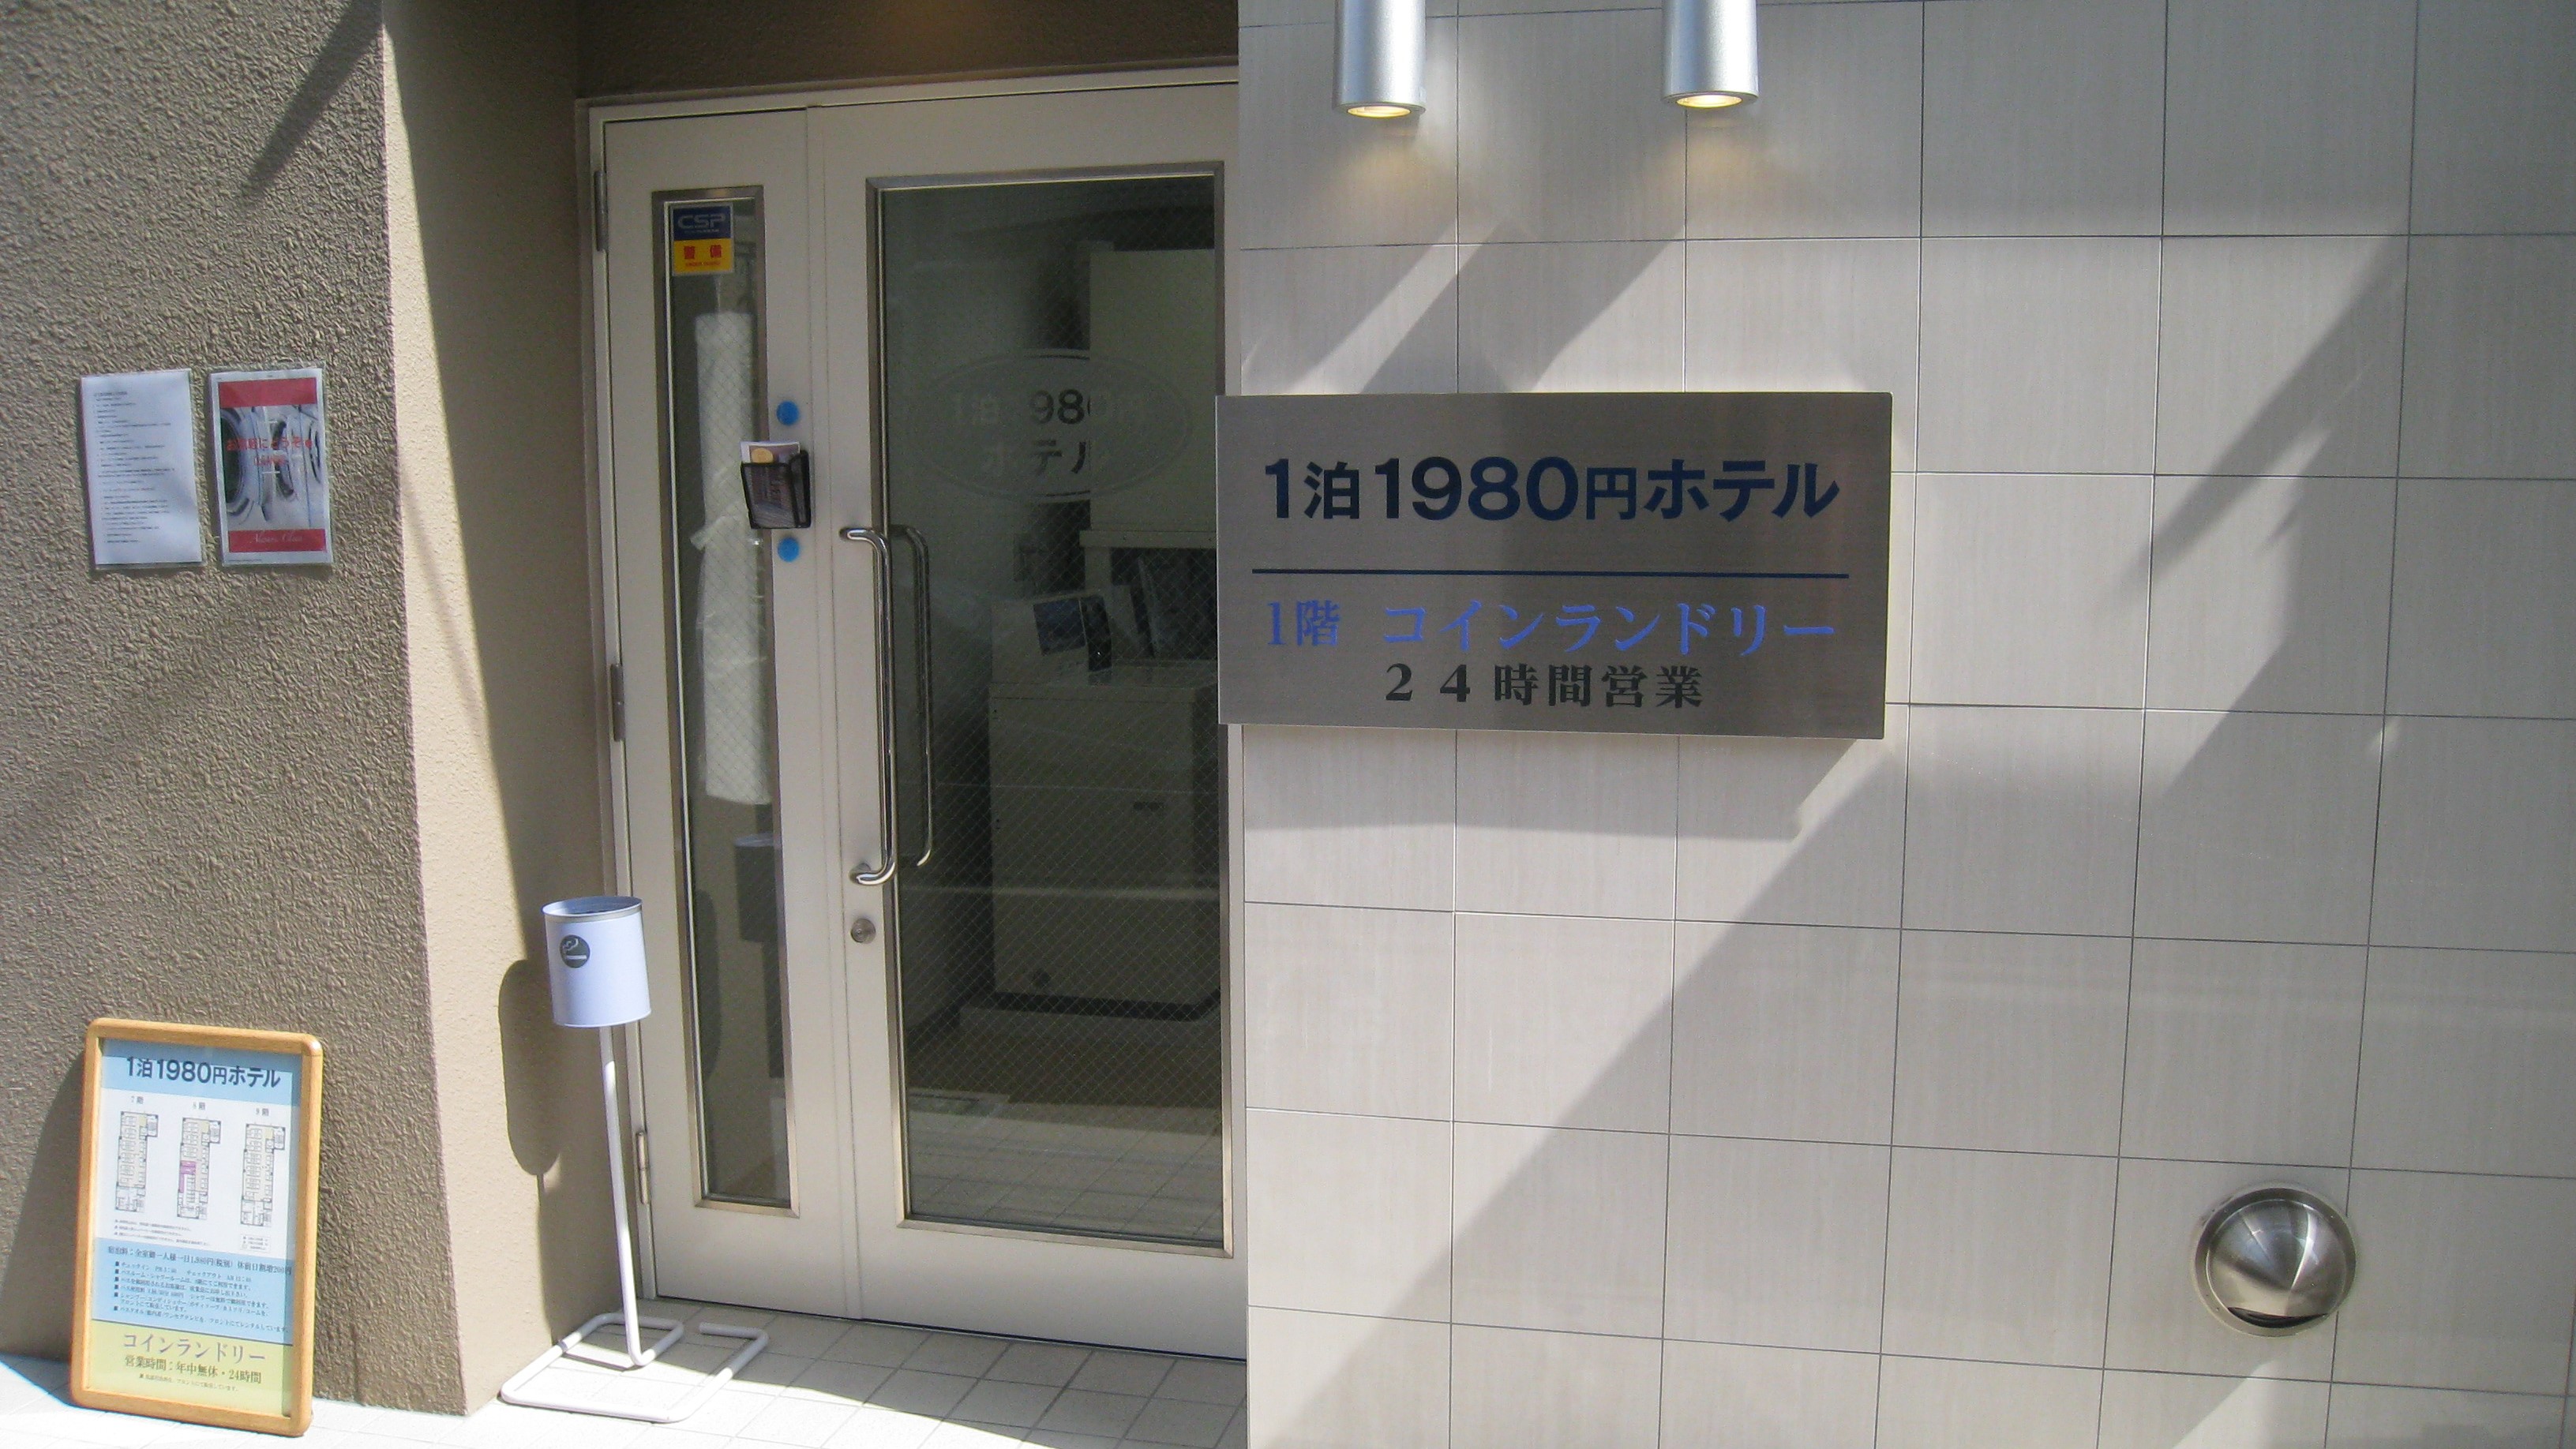 1泊1980円ホテルTokyo image